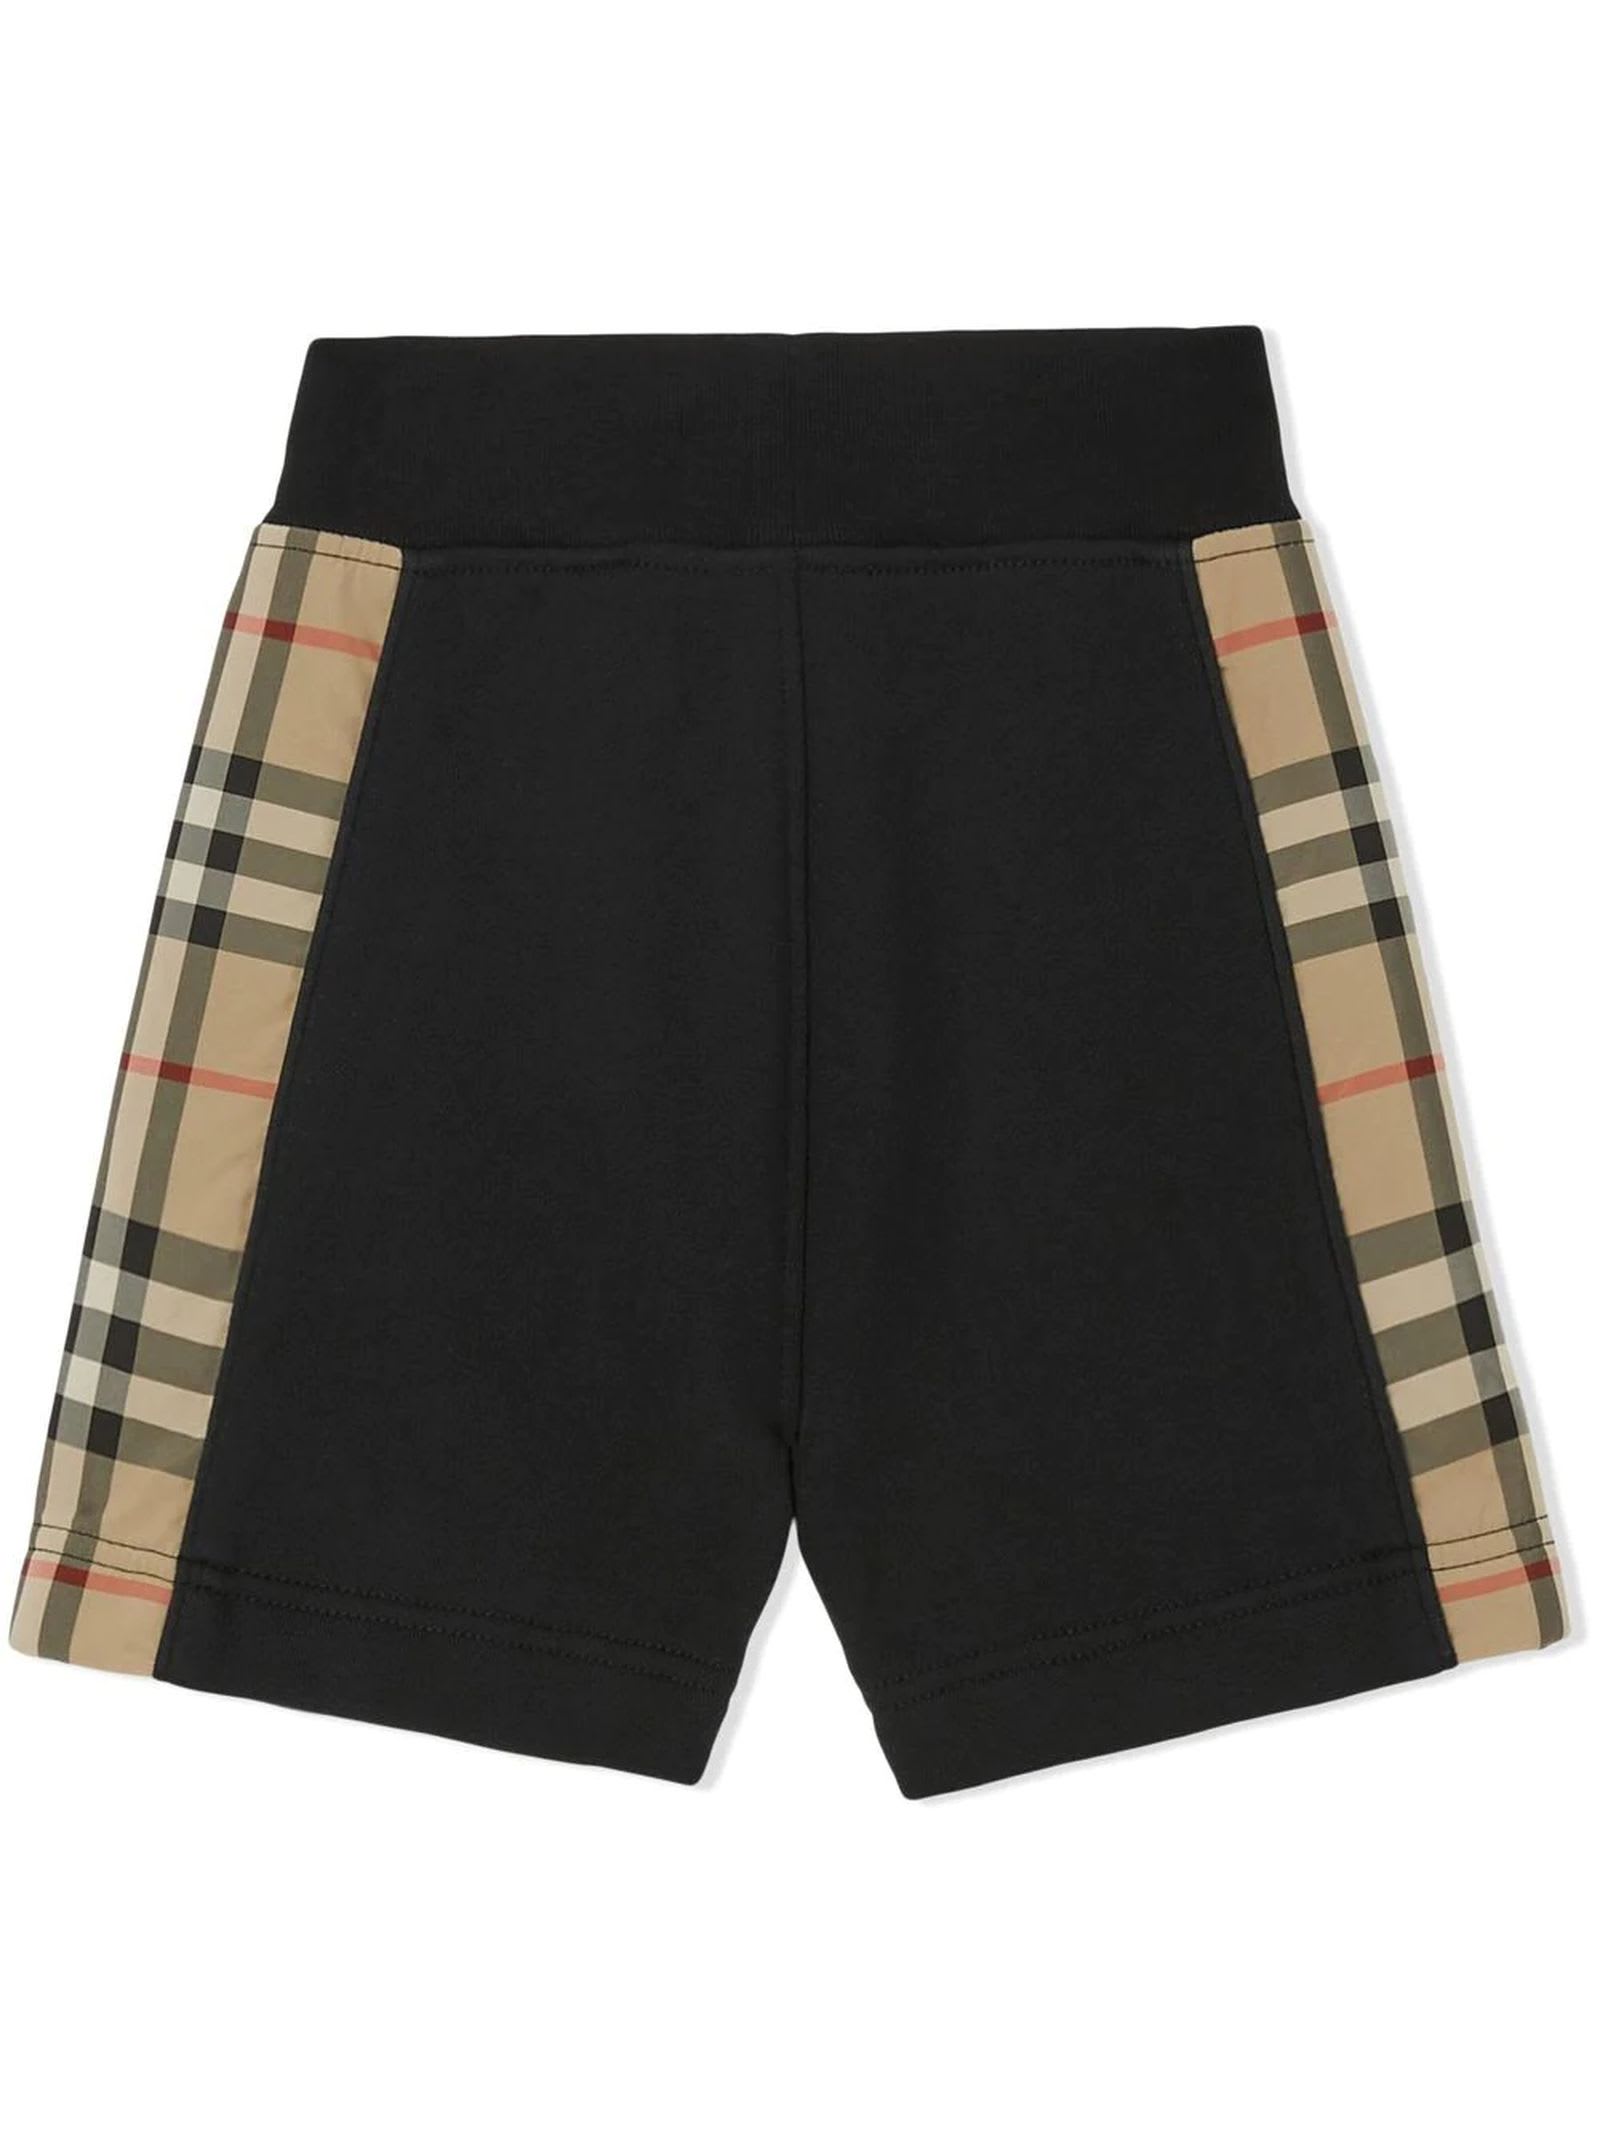 Shop Burberry Black Cotton Shorts